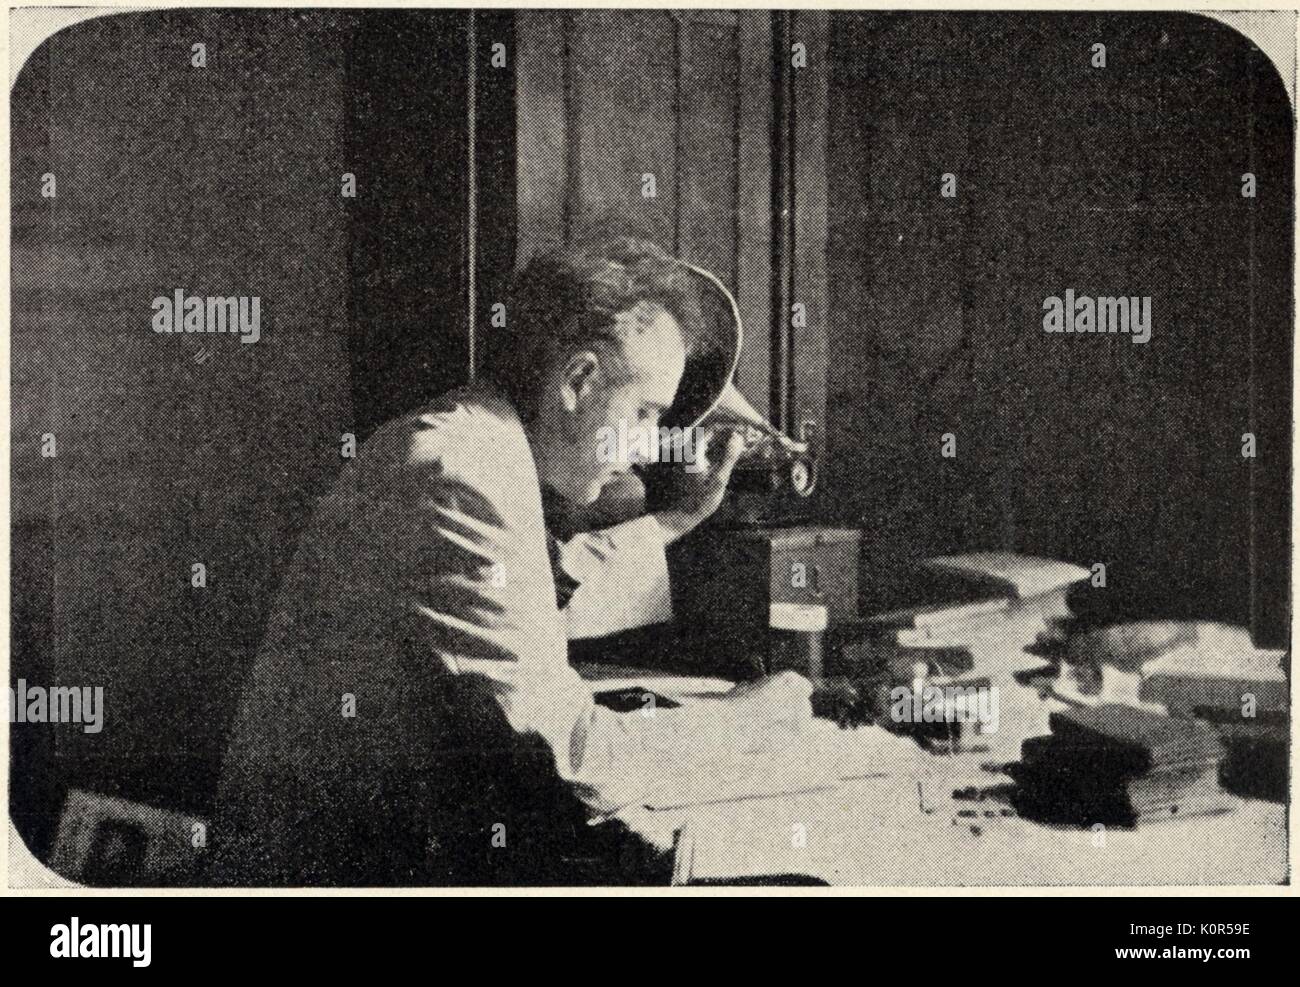 Bartok Bela ascolto di un fonogramma, 1915. Ascolto di registrazioni di melodie folk. Ungherese compositore e pianista, 25 marzo 1881 - 26 settembre 1945. Foto Stock